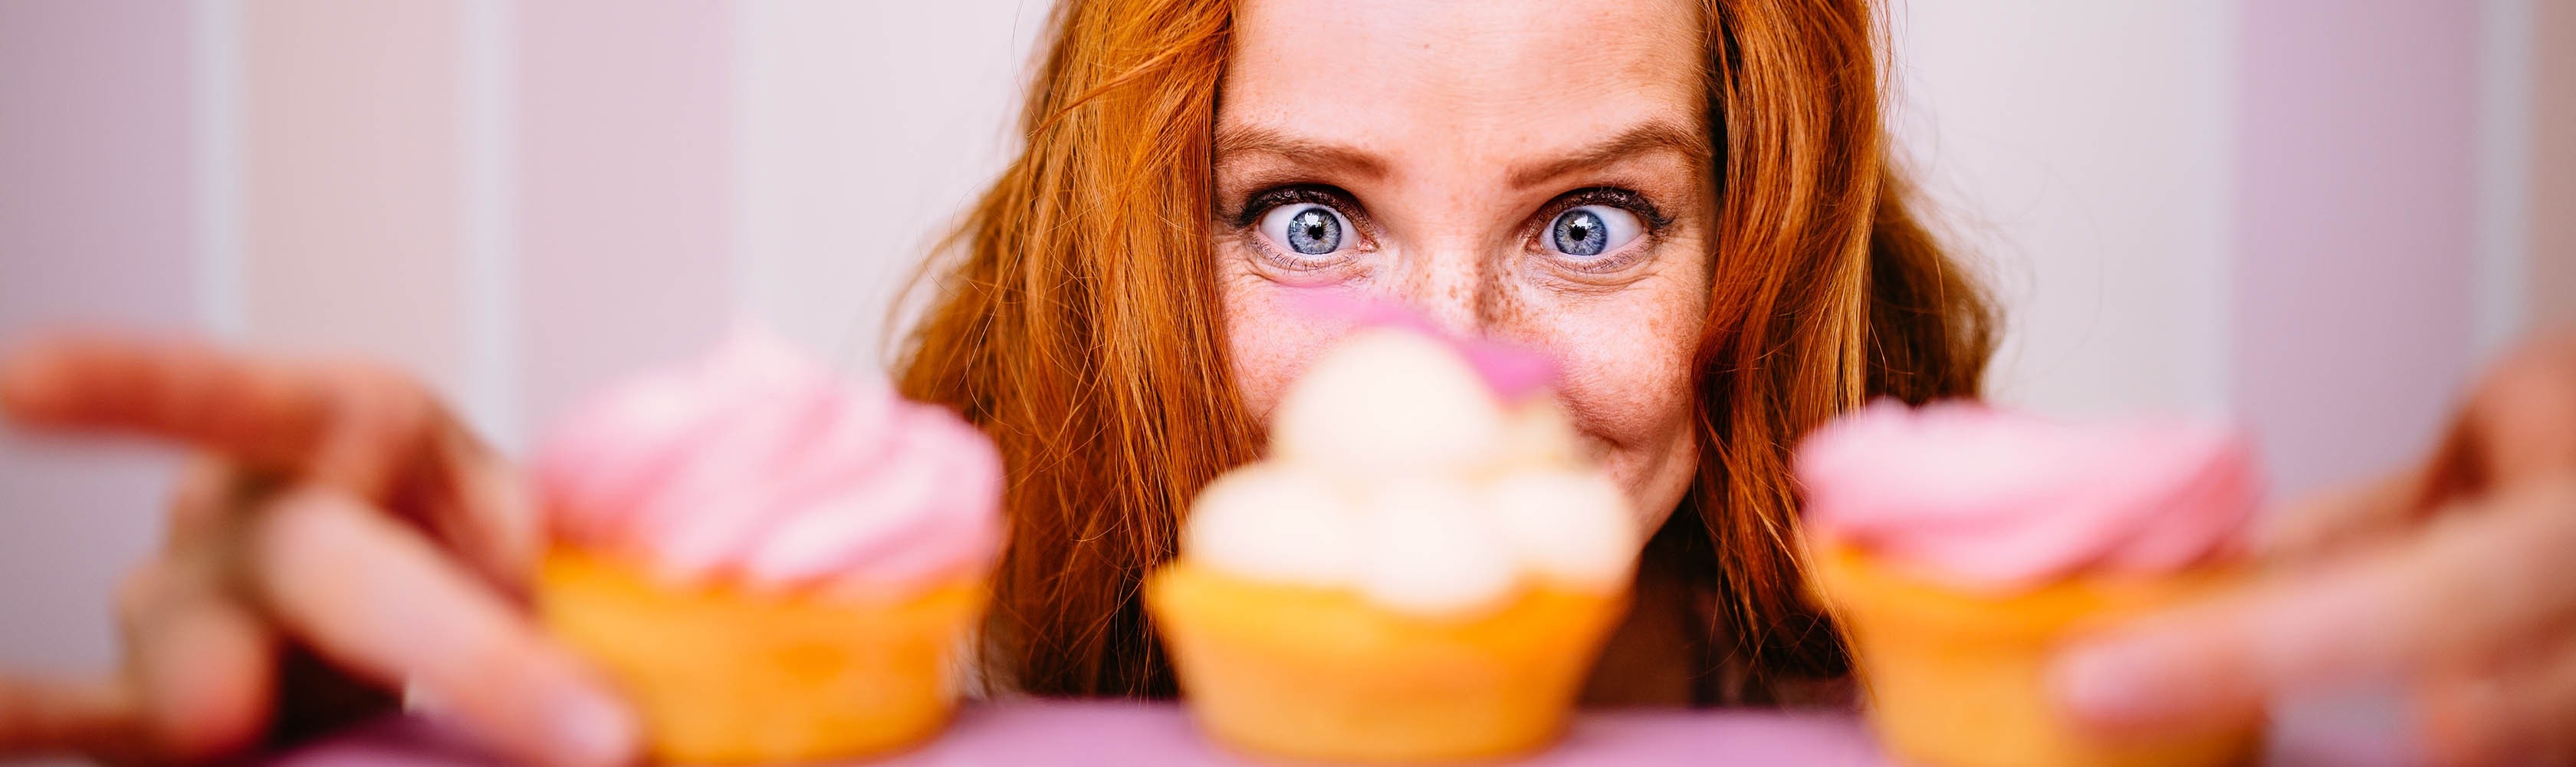 Une femme a trois cupcakes devant elle et tente de résister au désir.